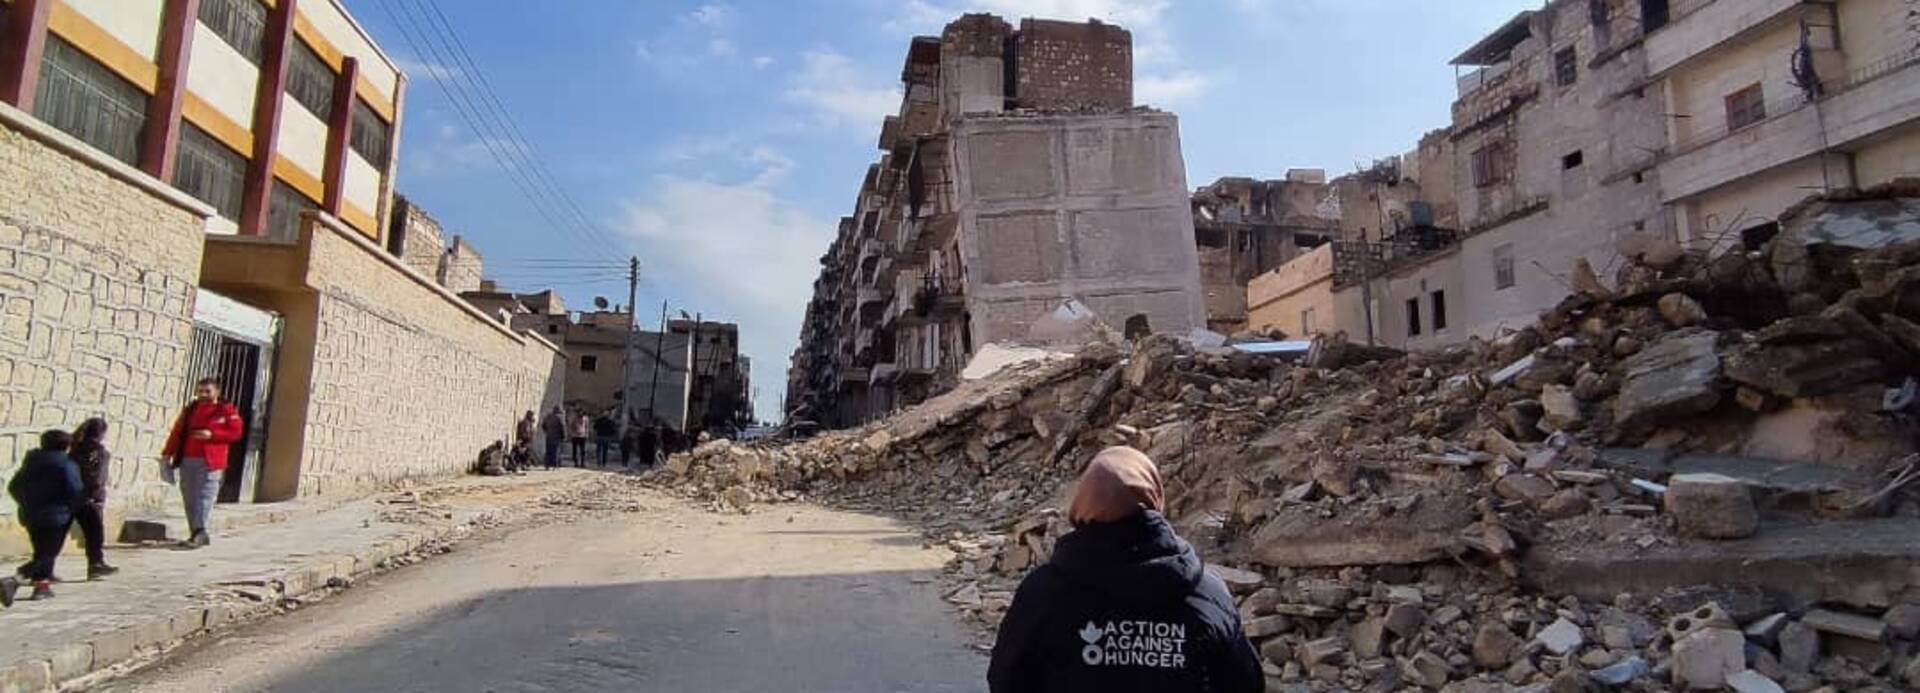 Eine Mitarbeiterin von Aktion gegen den Hunger läuft durch eine vom Krieg zerstörte Straße in Syrien.